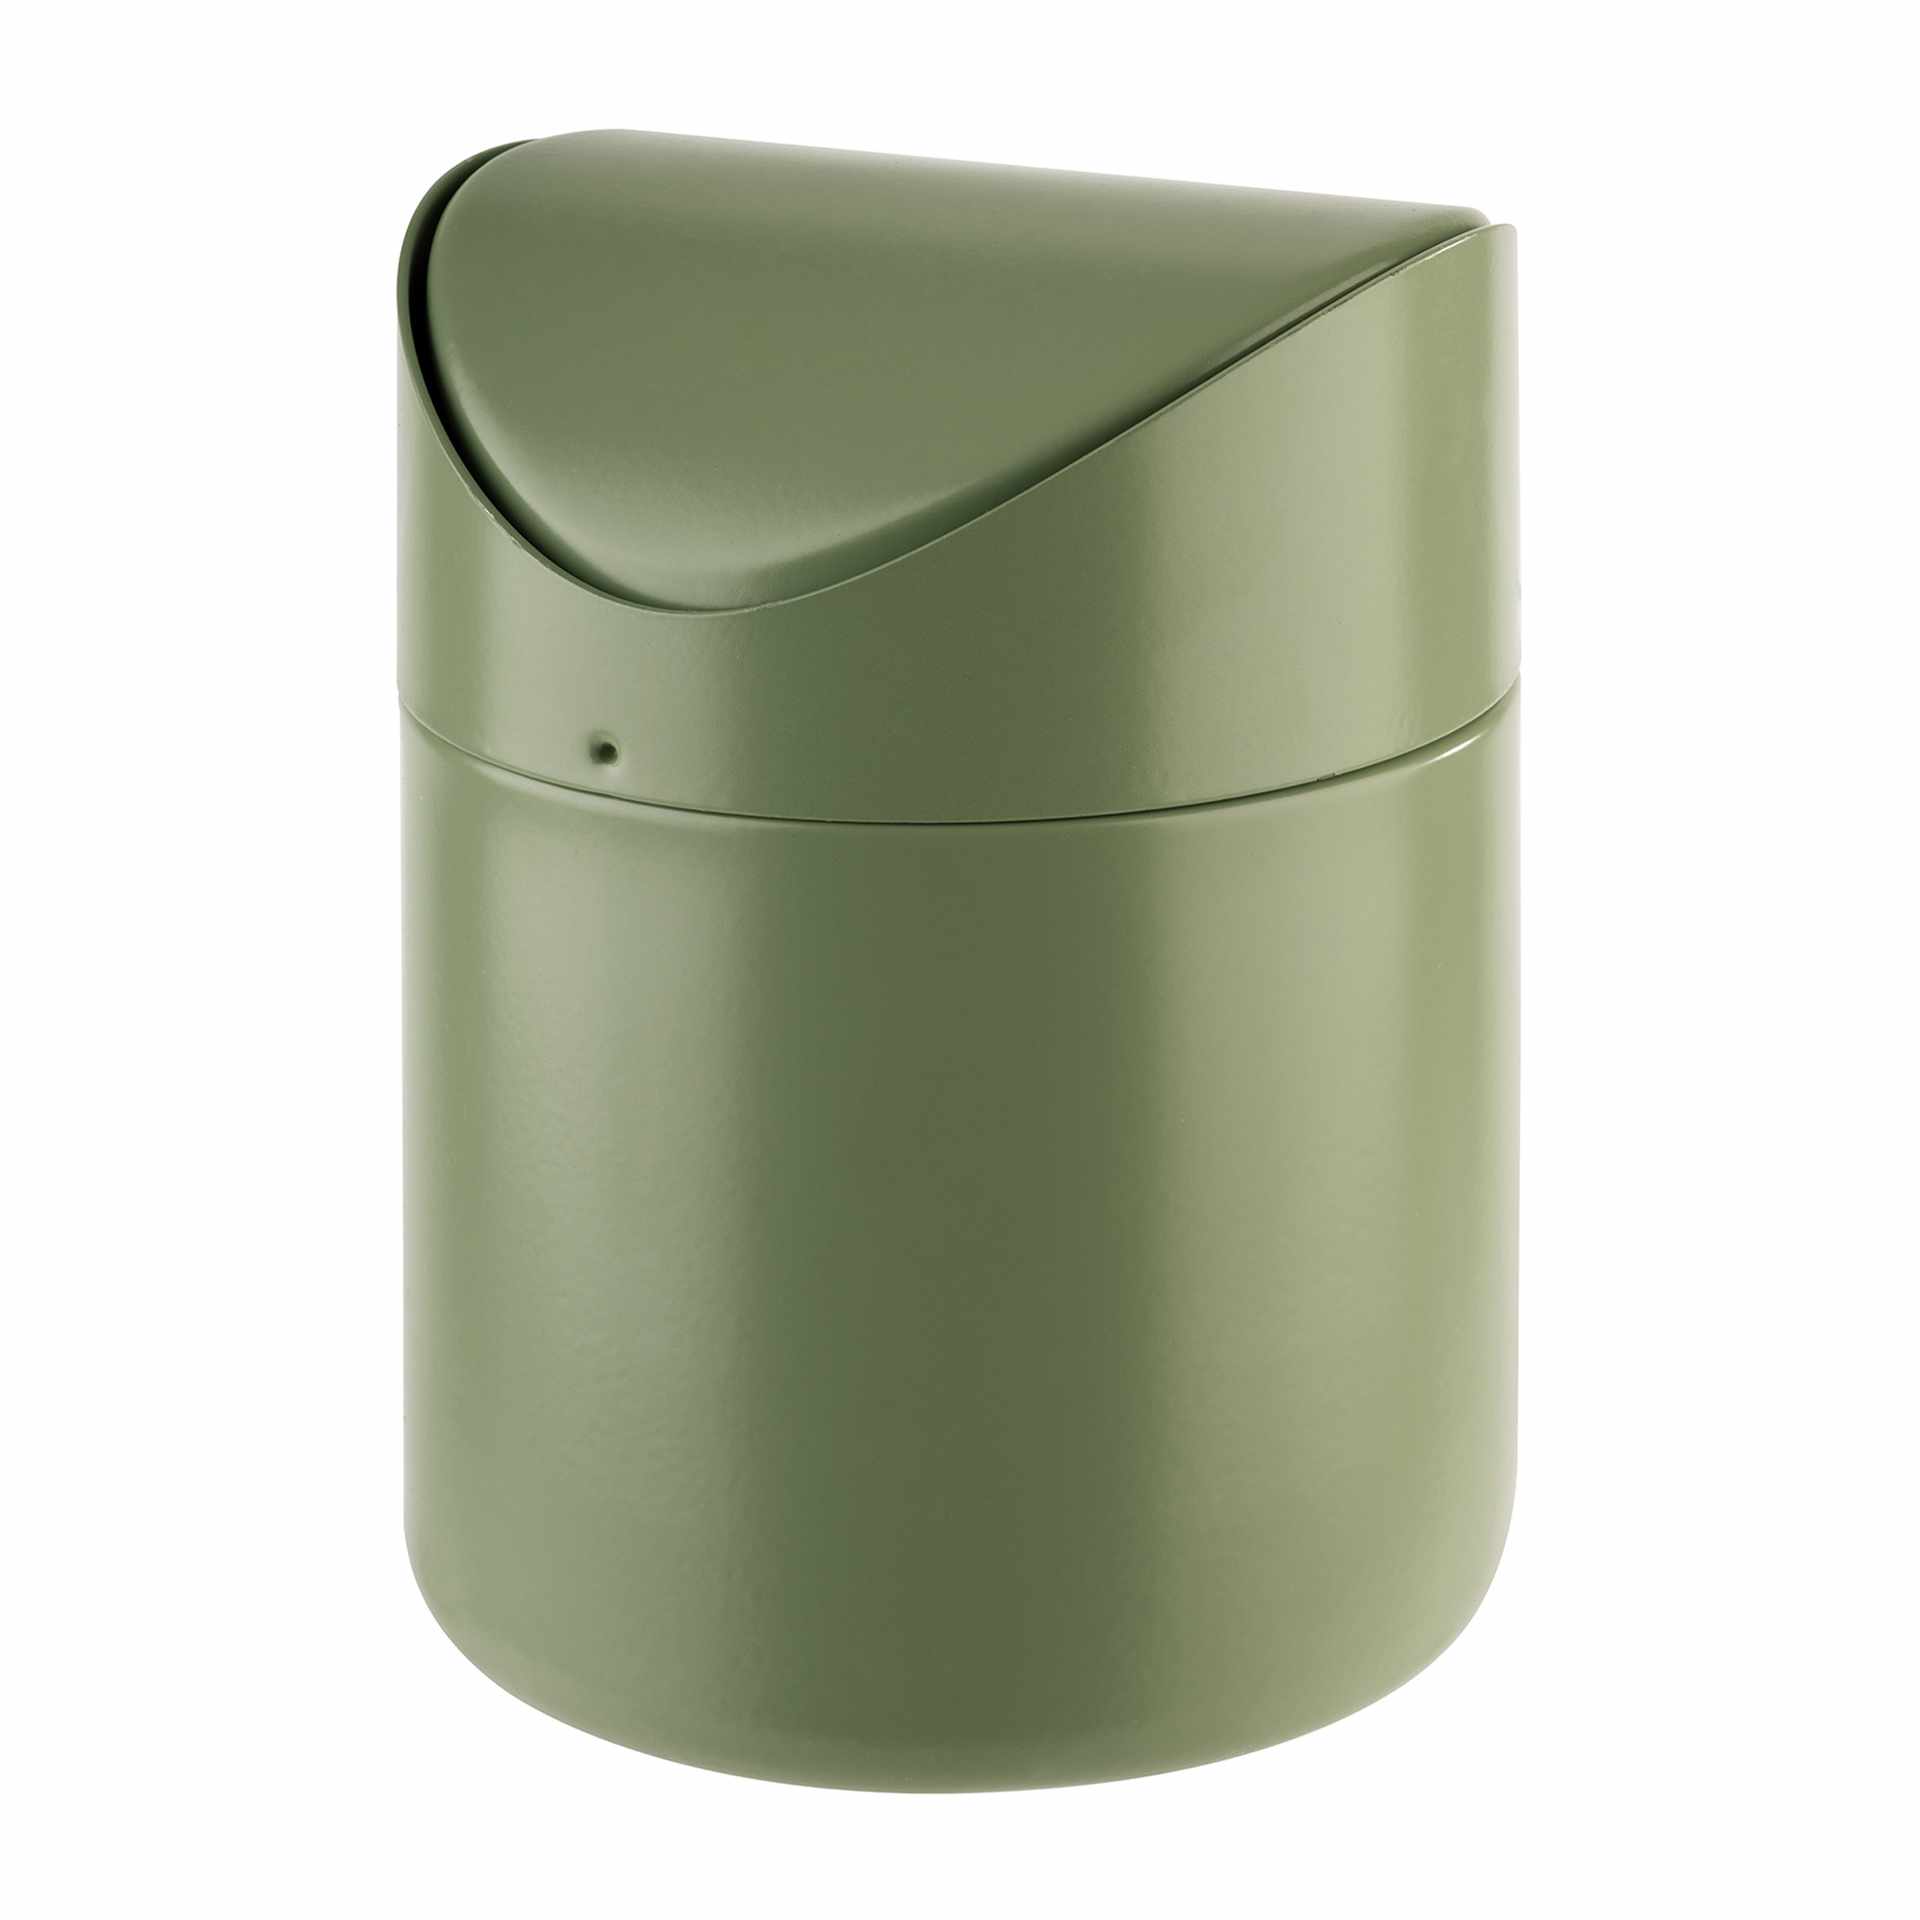 Tischrestebehälter - mit Bajonettverschluss - grün - Höhe 17,0 cm - Ø 12 cm - Inhalt 1,2 l - Edelstahl - 40802-B